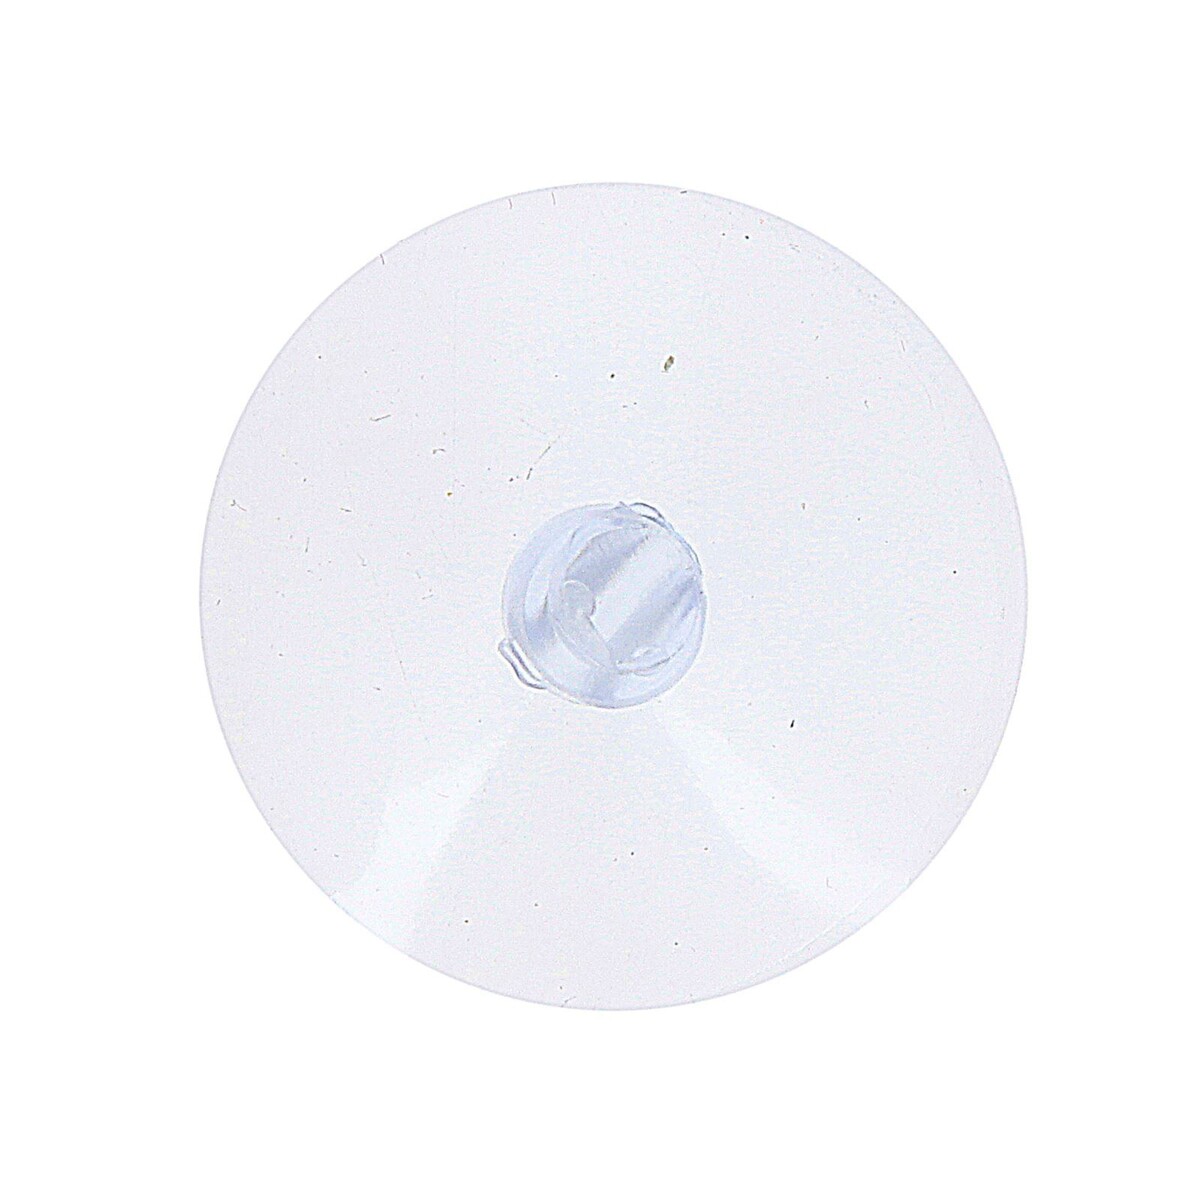 Присоска с дыркой сбоку, набор10 шт., диаметр: 3 см